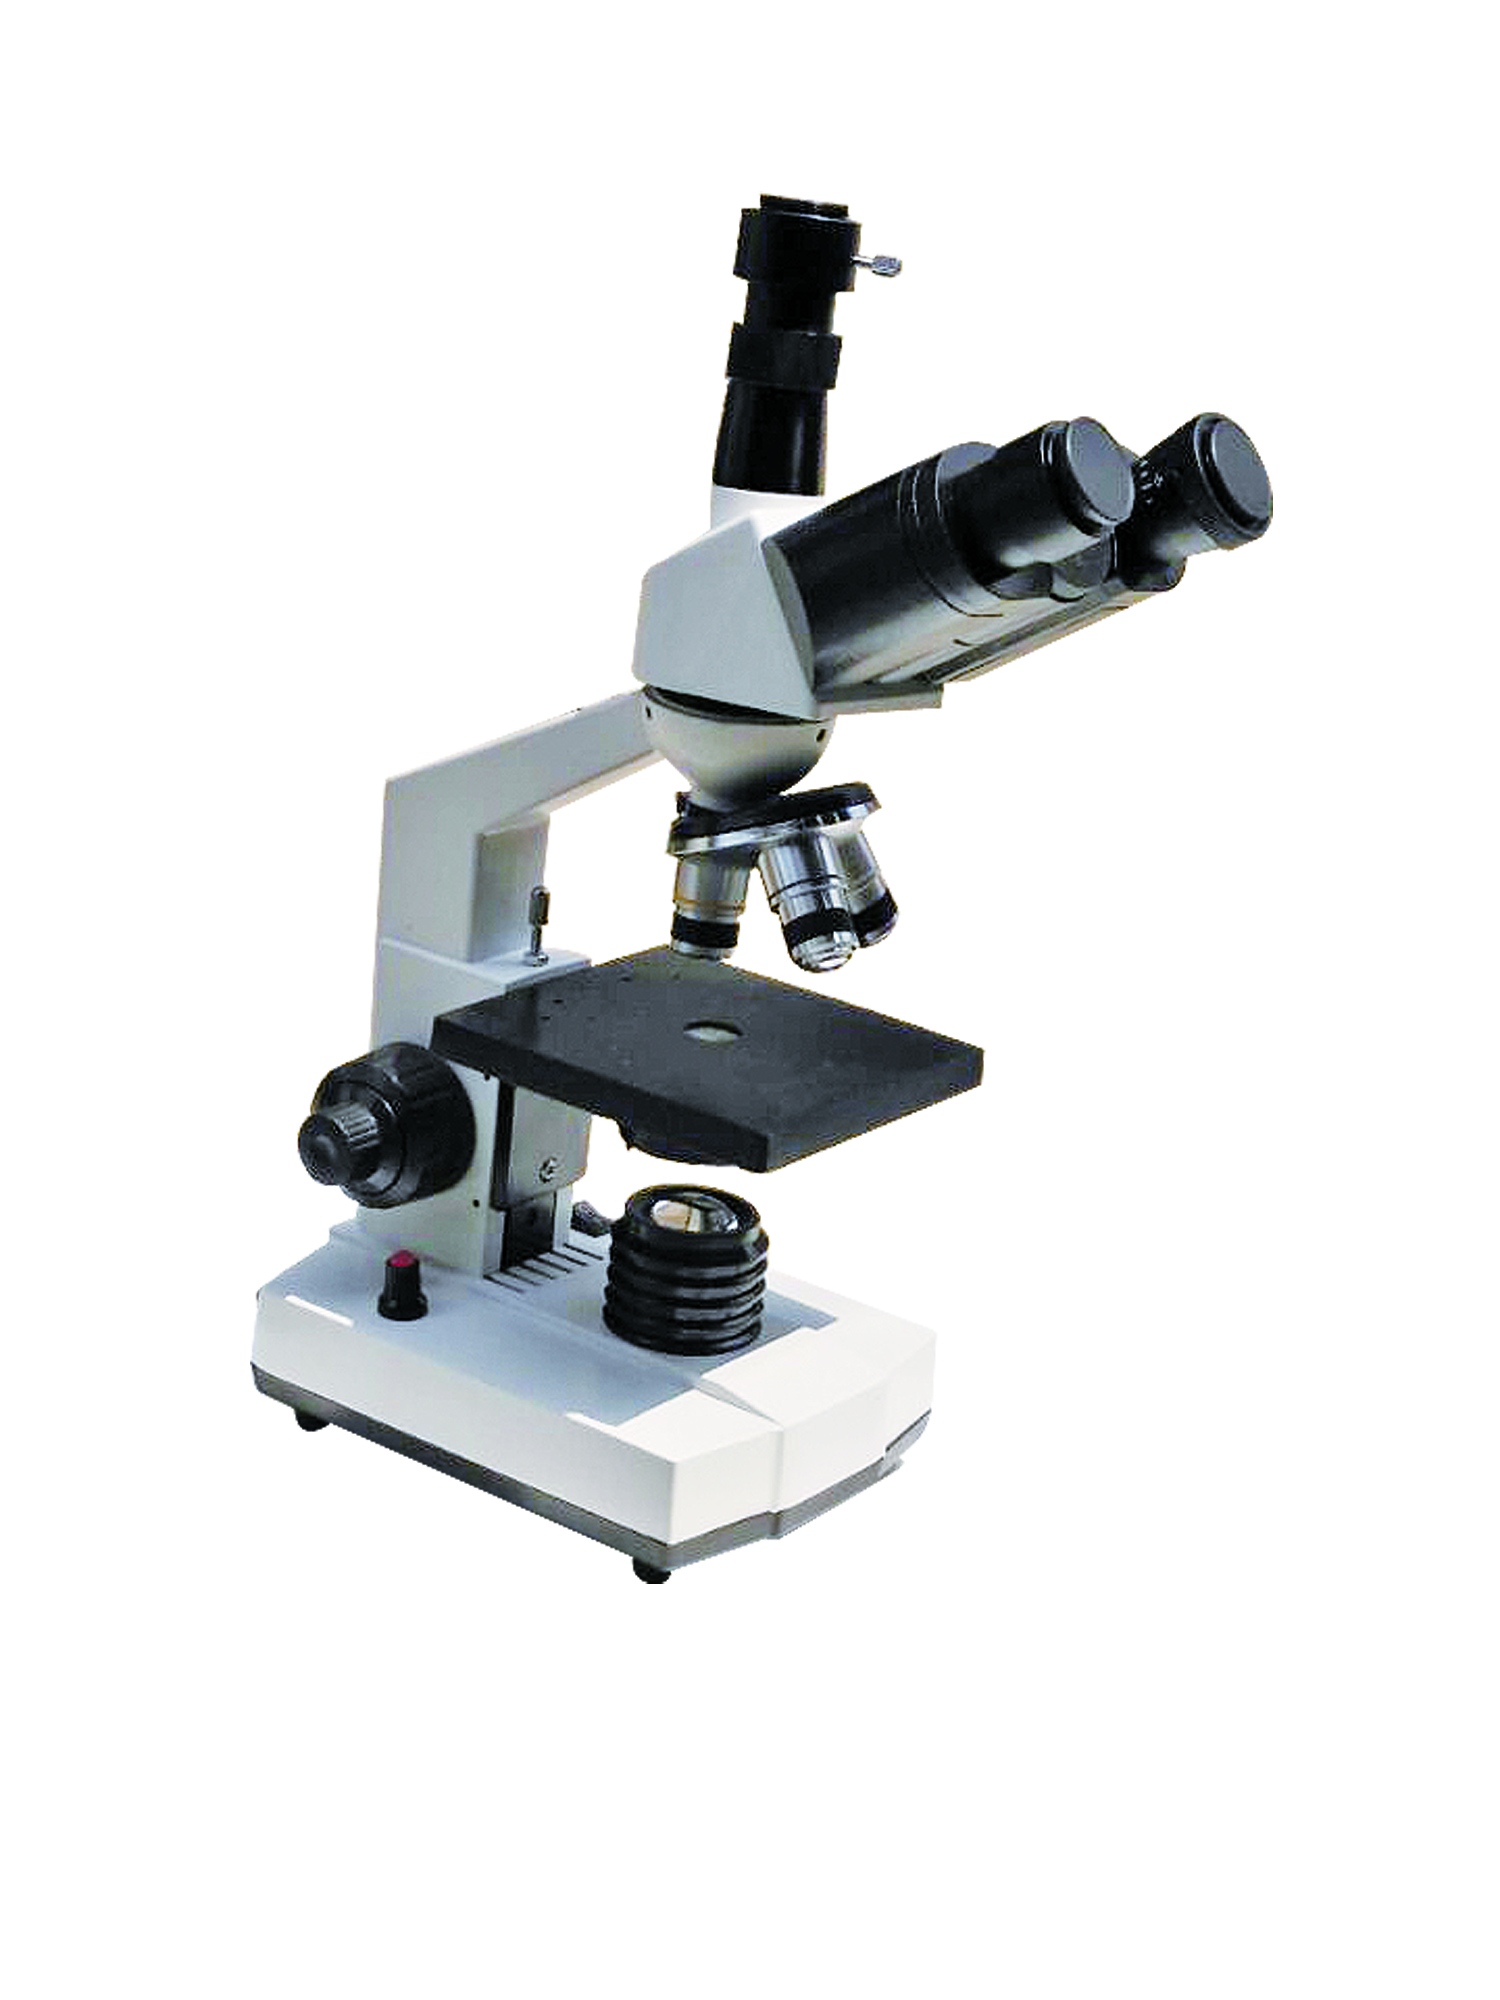 xsp-104b 光学显微镜 济南威诺